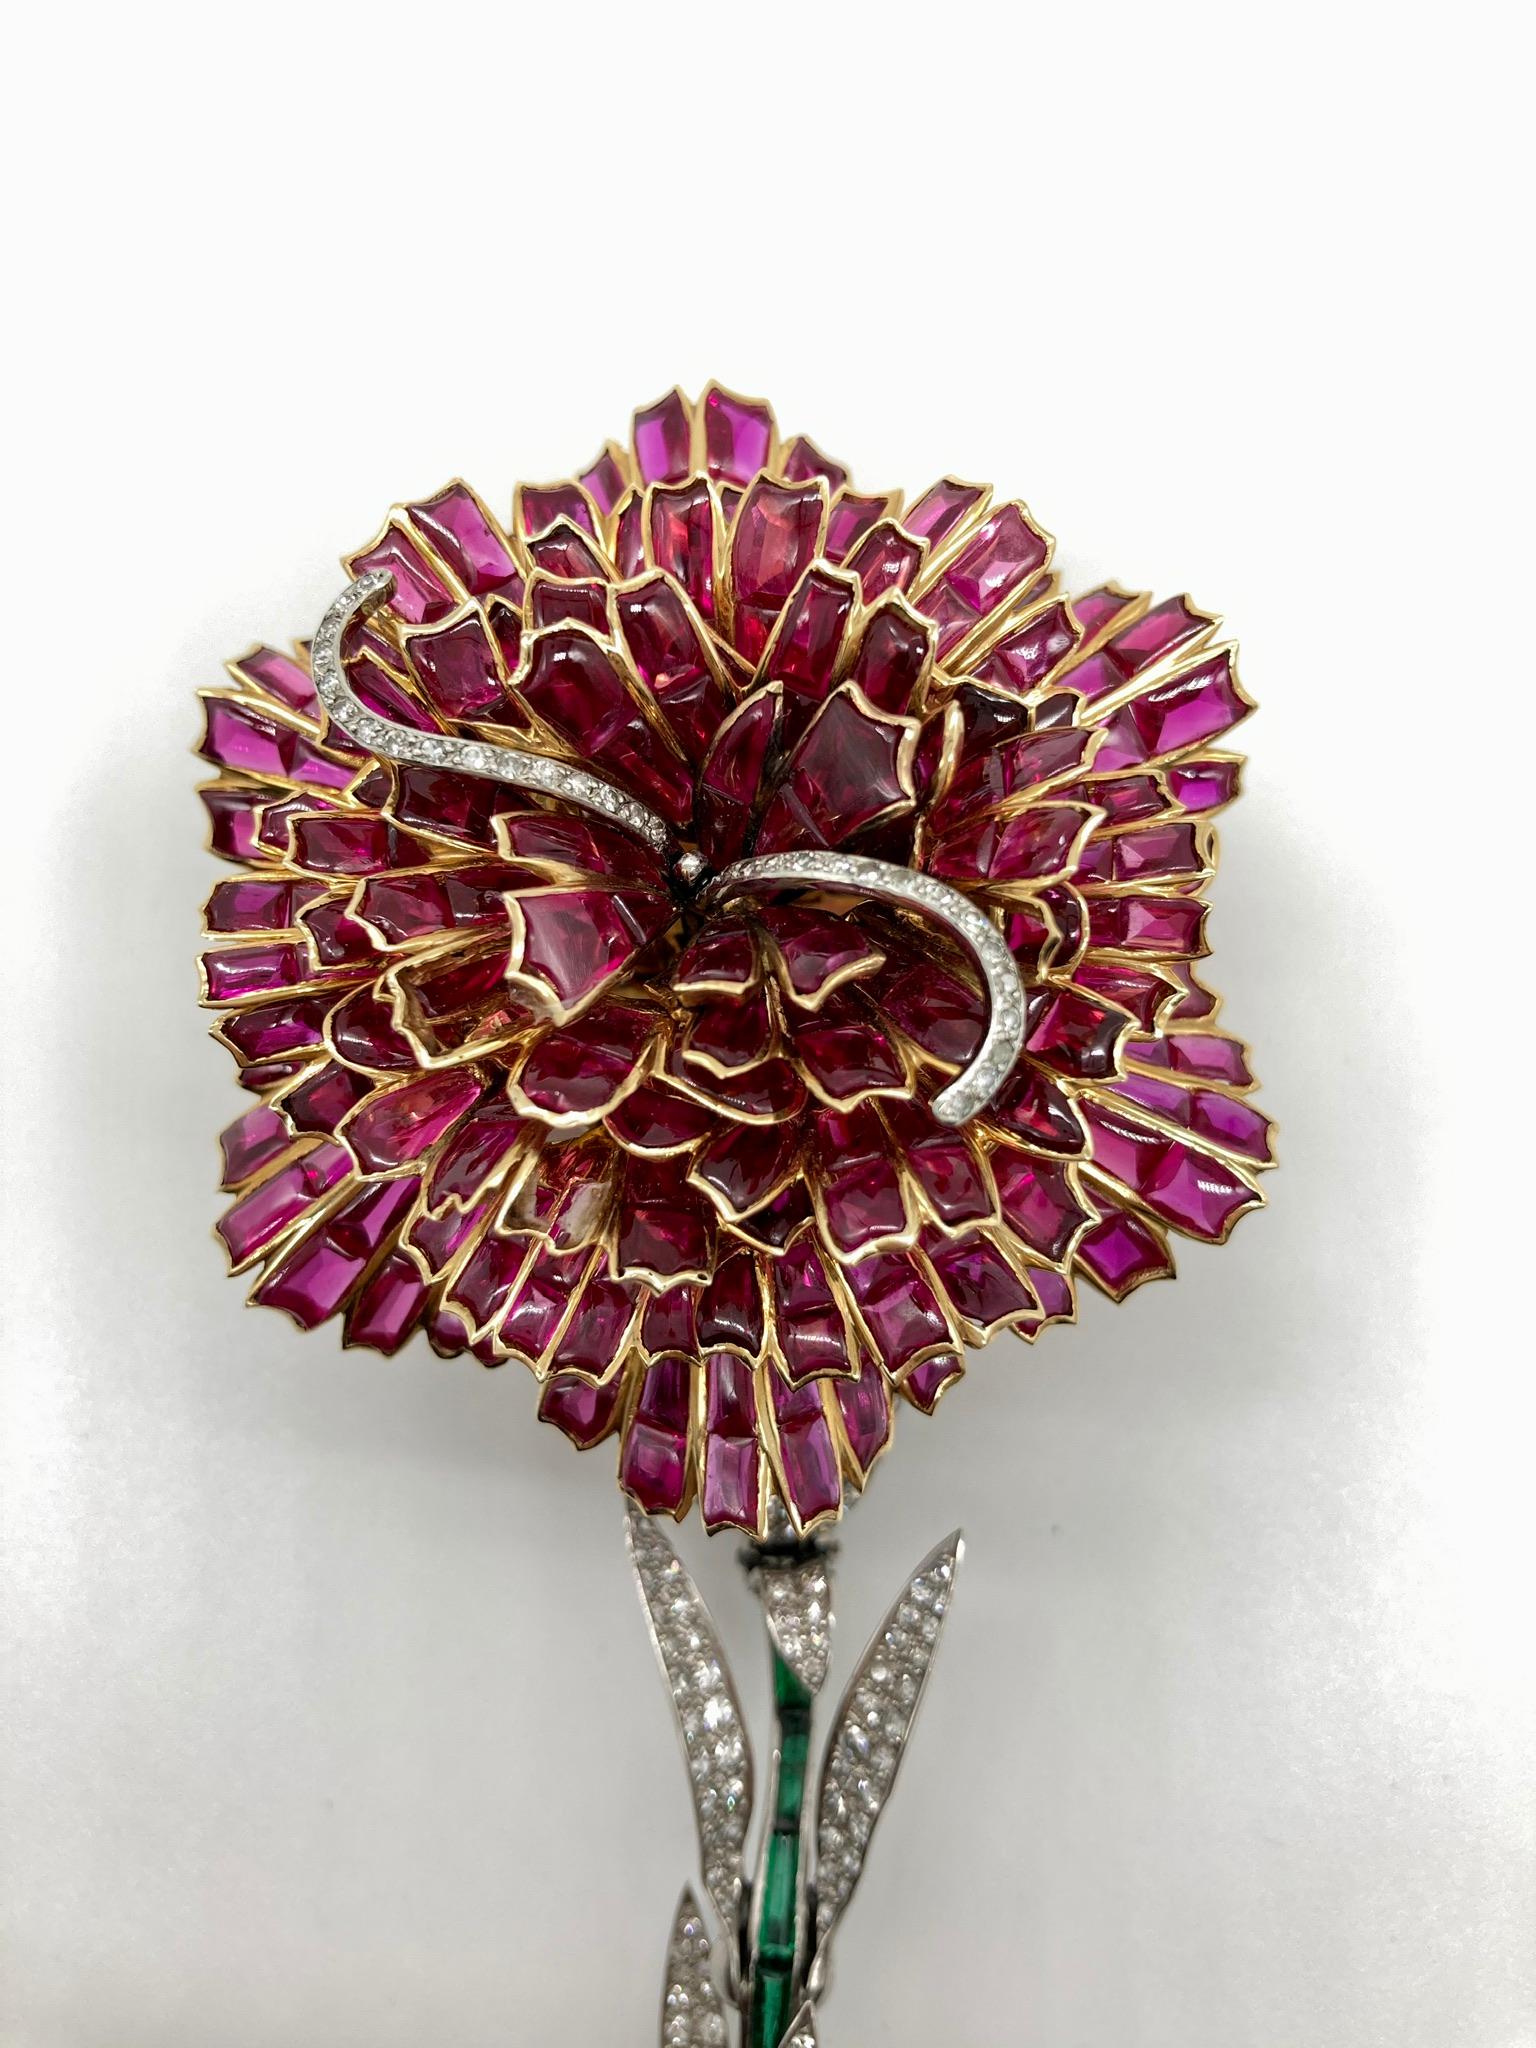 Élégante broche fleur en or blanc de Fabergé, ornée de rubis, d'émeraudes et de diamants. France, vers les années 1990.
(